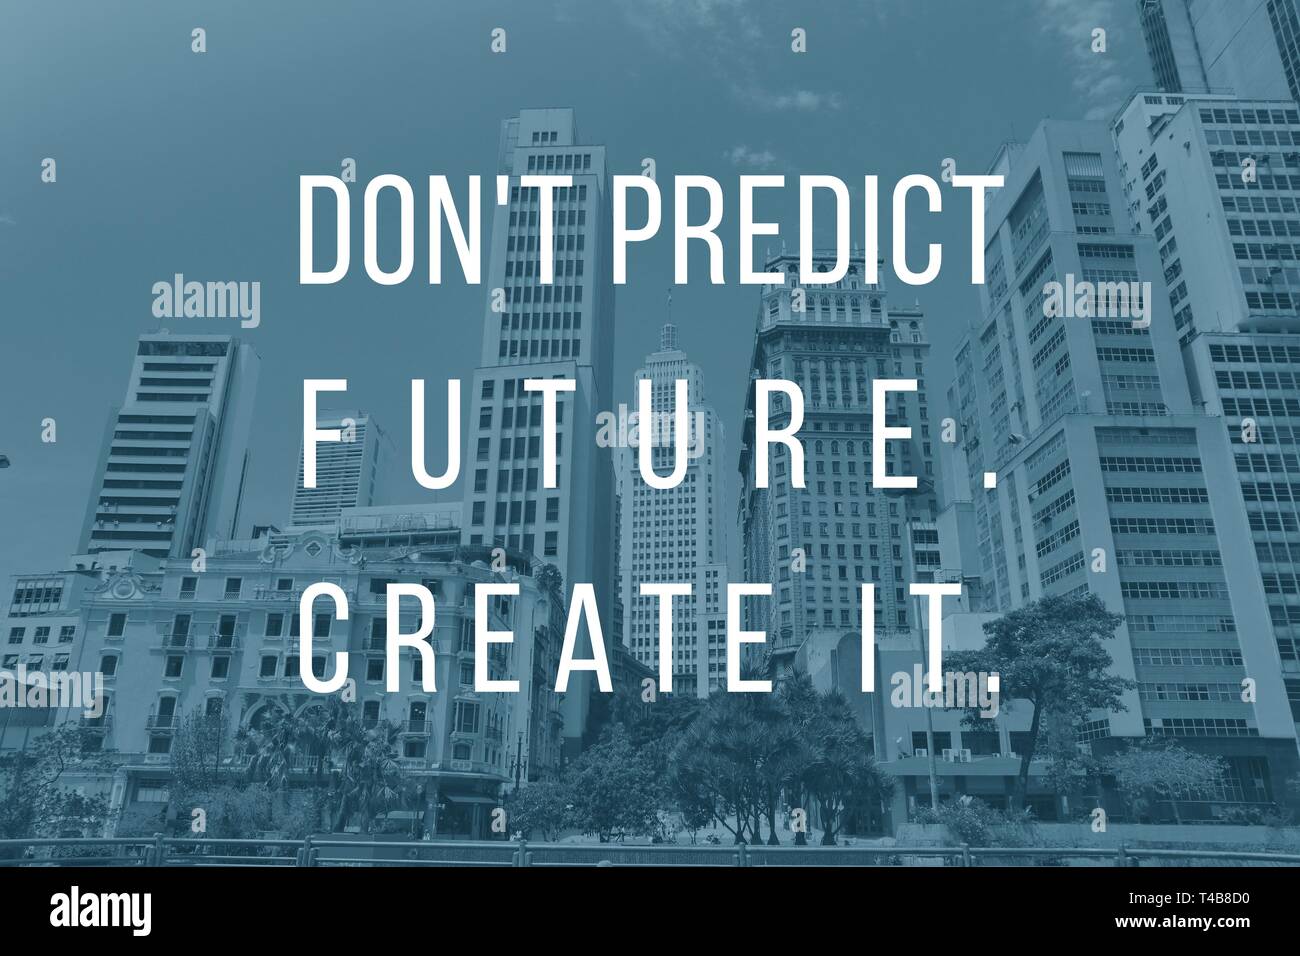 Inspirational Anführungsstrich Poster - keine Zukunft voraussagen, erstellen Sie sie. Erfolg Motivation. Stockfoto